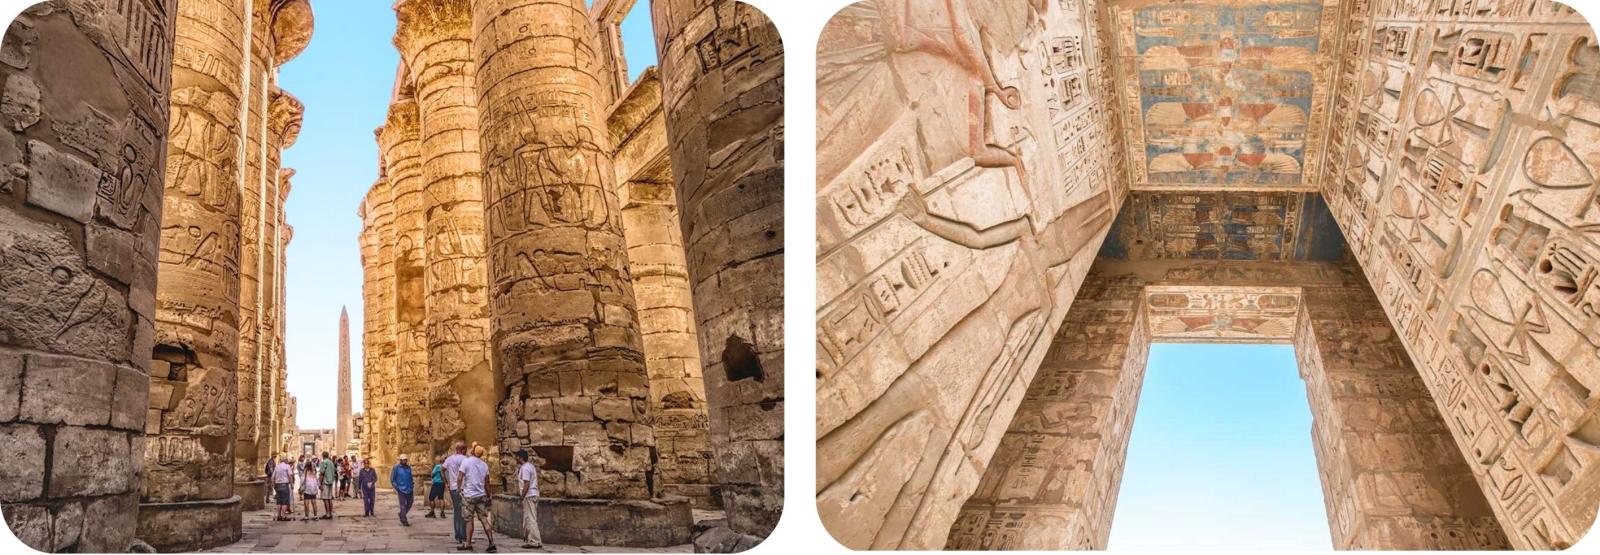 Afbeeldingsresultaat voor Karnak